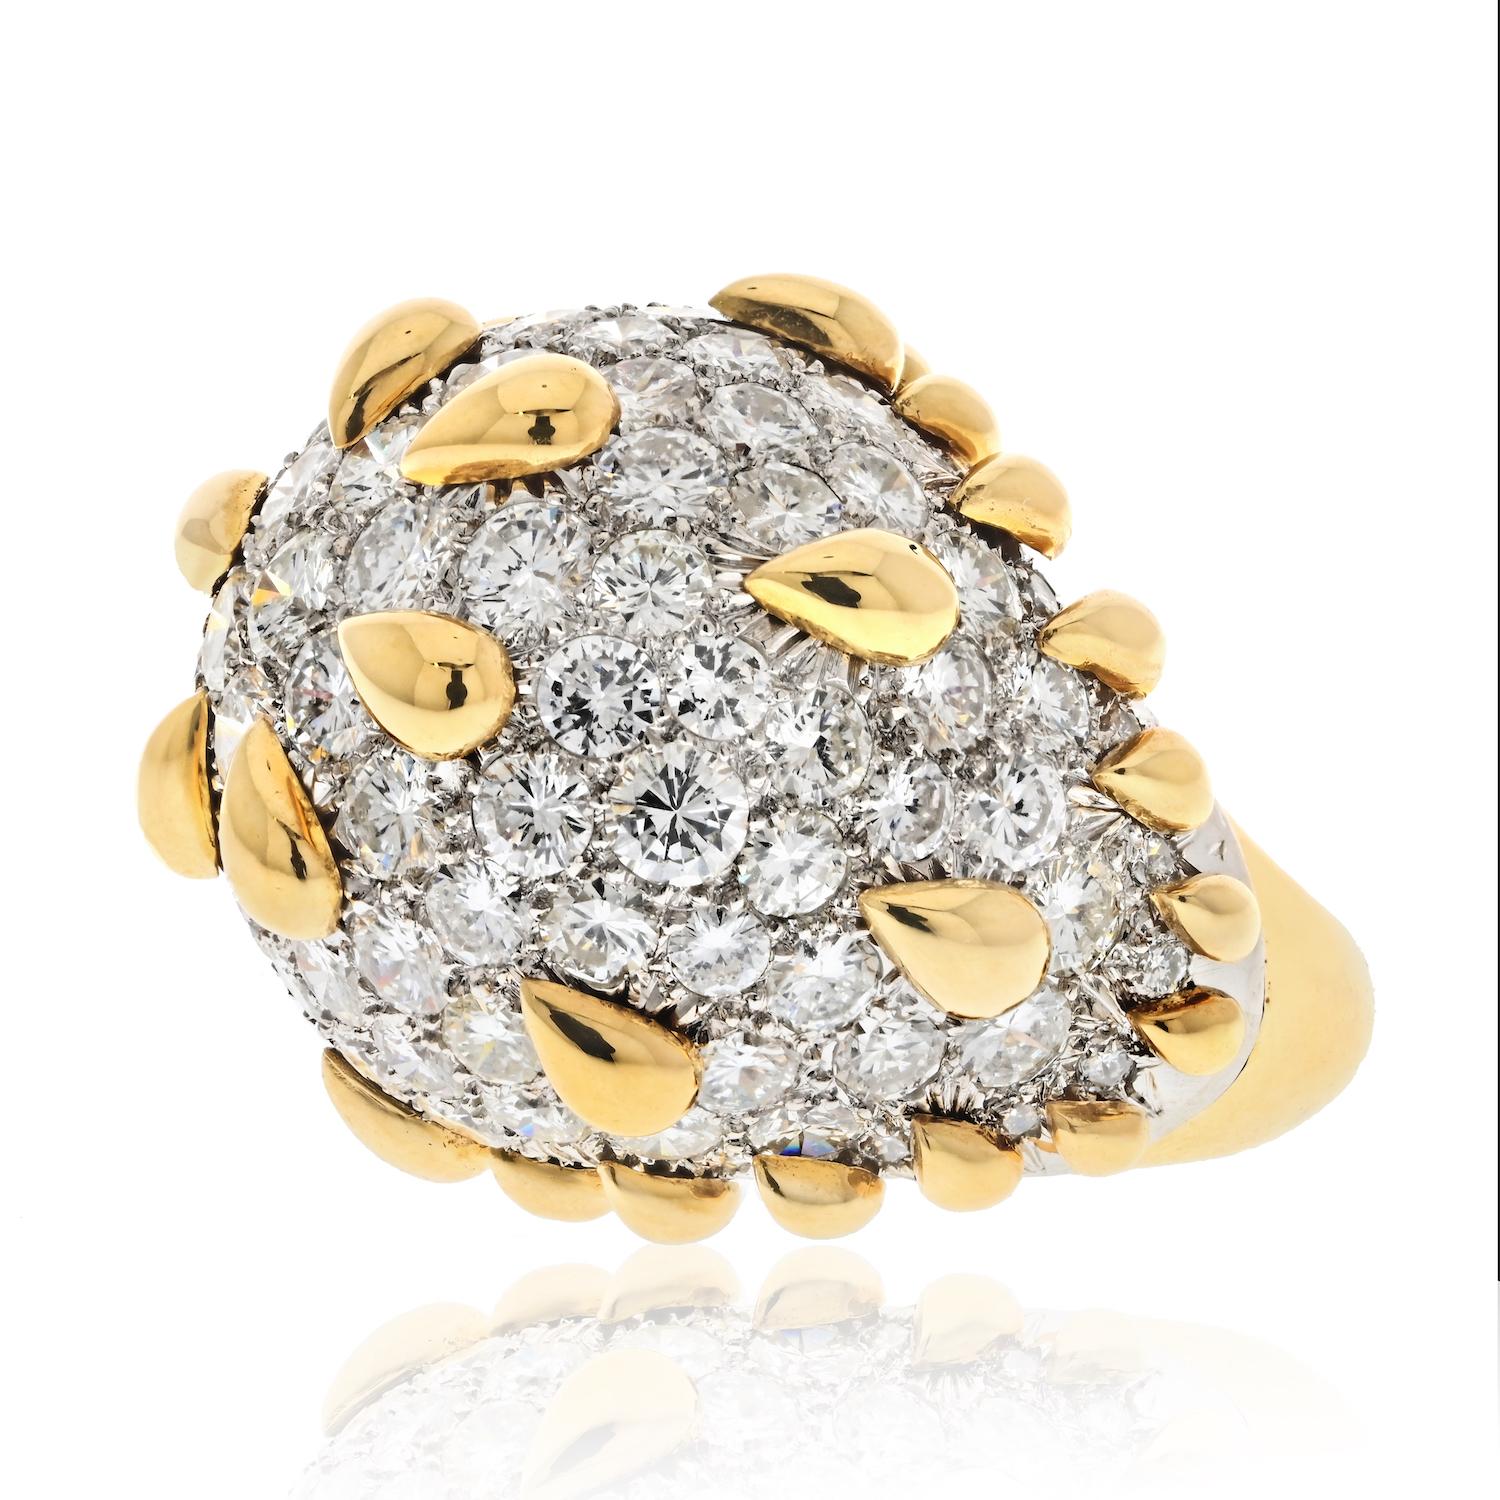 La bague dôme en diamant conçue par David Webb est un véritable chef-d'œuvre de joaillerie. Elle est réalisée en platine et en or jaune 18 carats, ce qui lui confère un attrait classique et intemporel. La bague est ornée d'un superbe dôme de